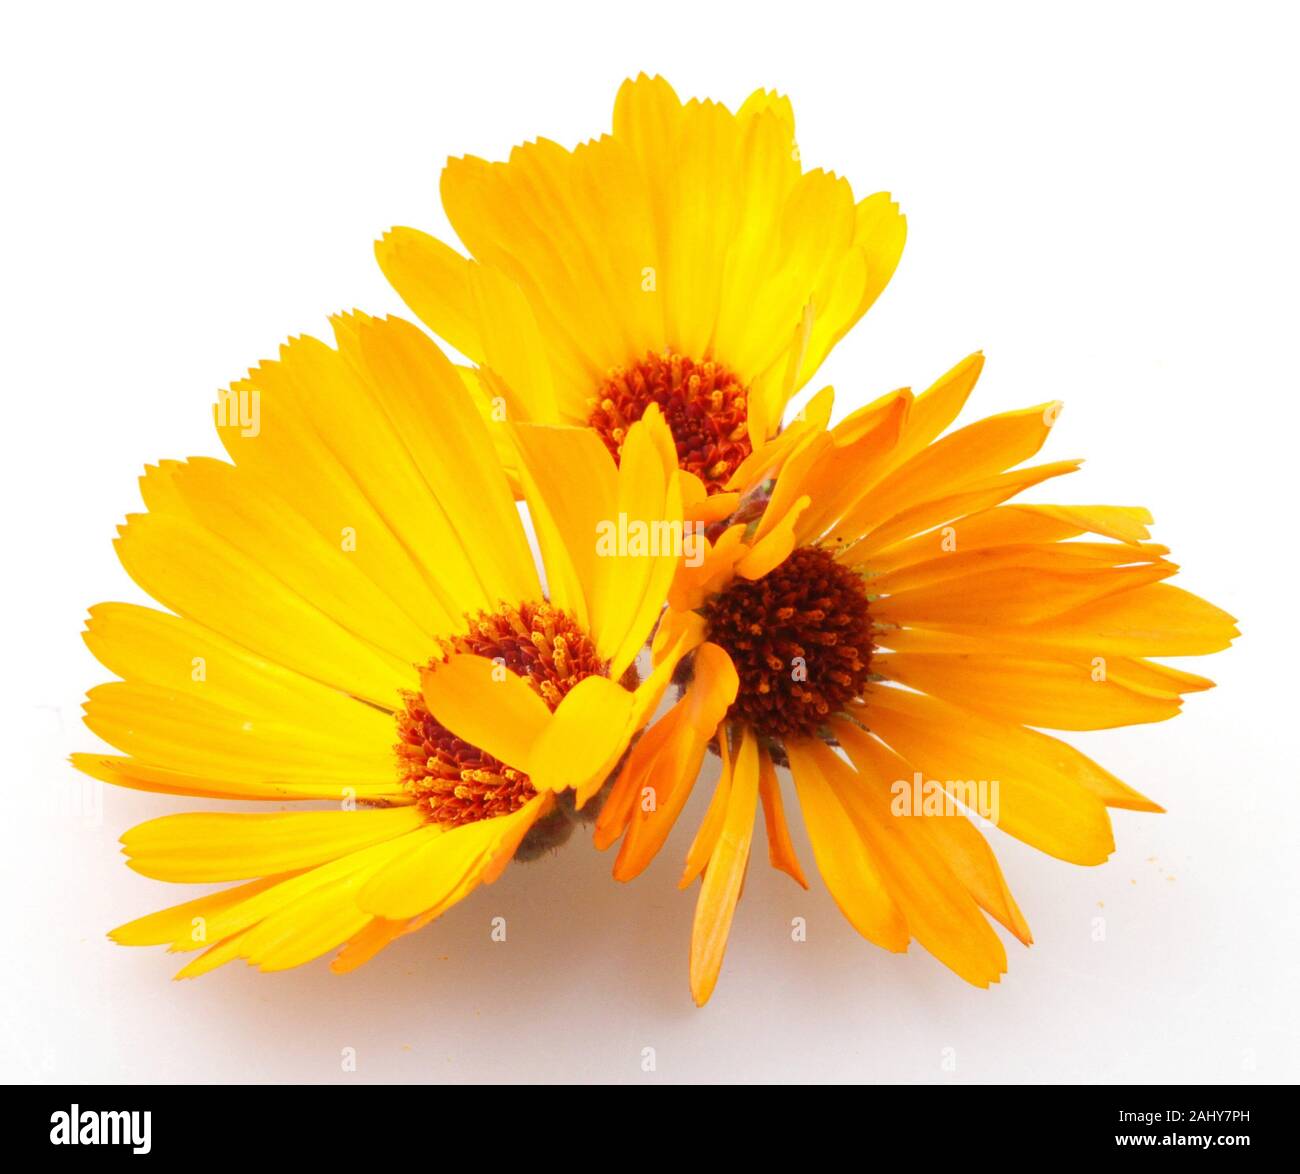 Schöne blühende gelbe Ringelblume isoliert auf weißem Hintergrund.  Calendula officinalis Stockfotografie - Alamy